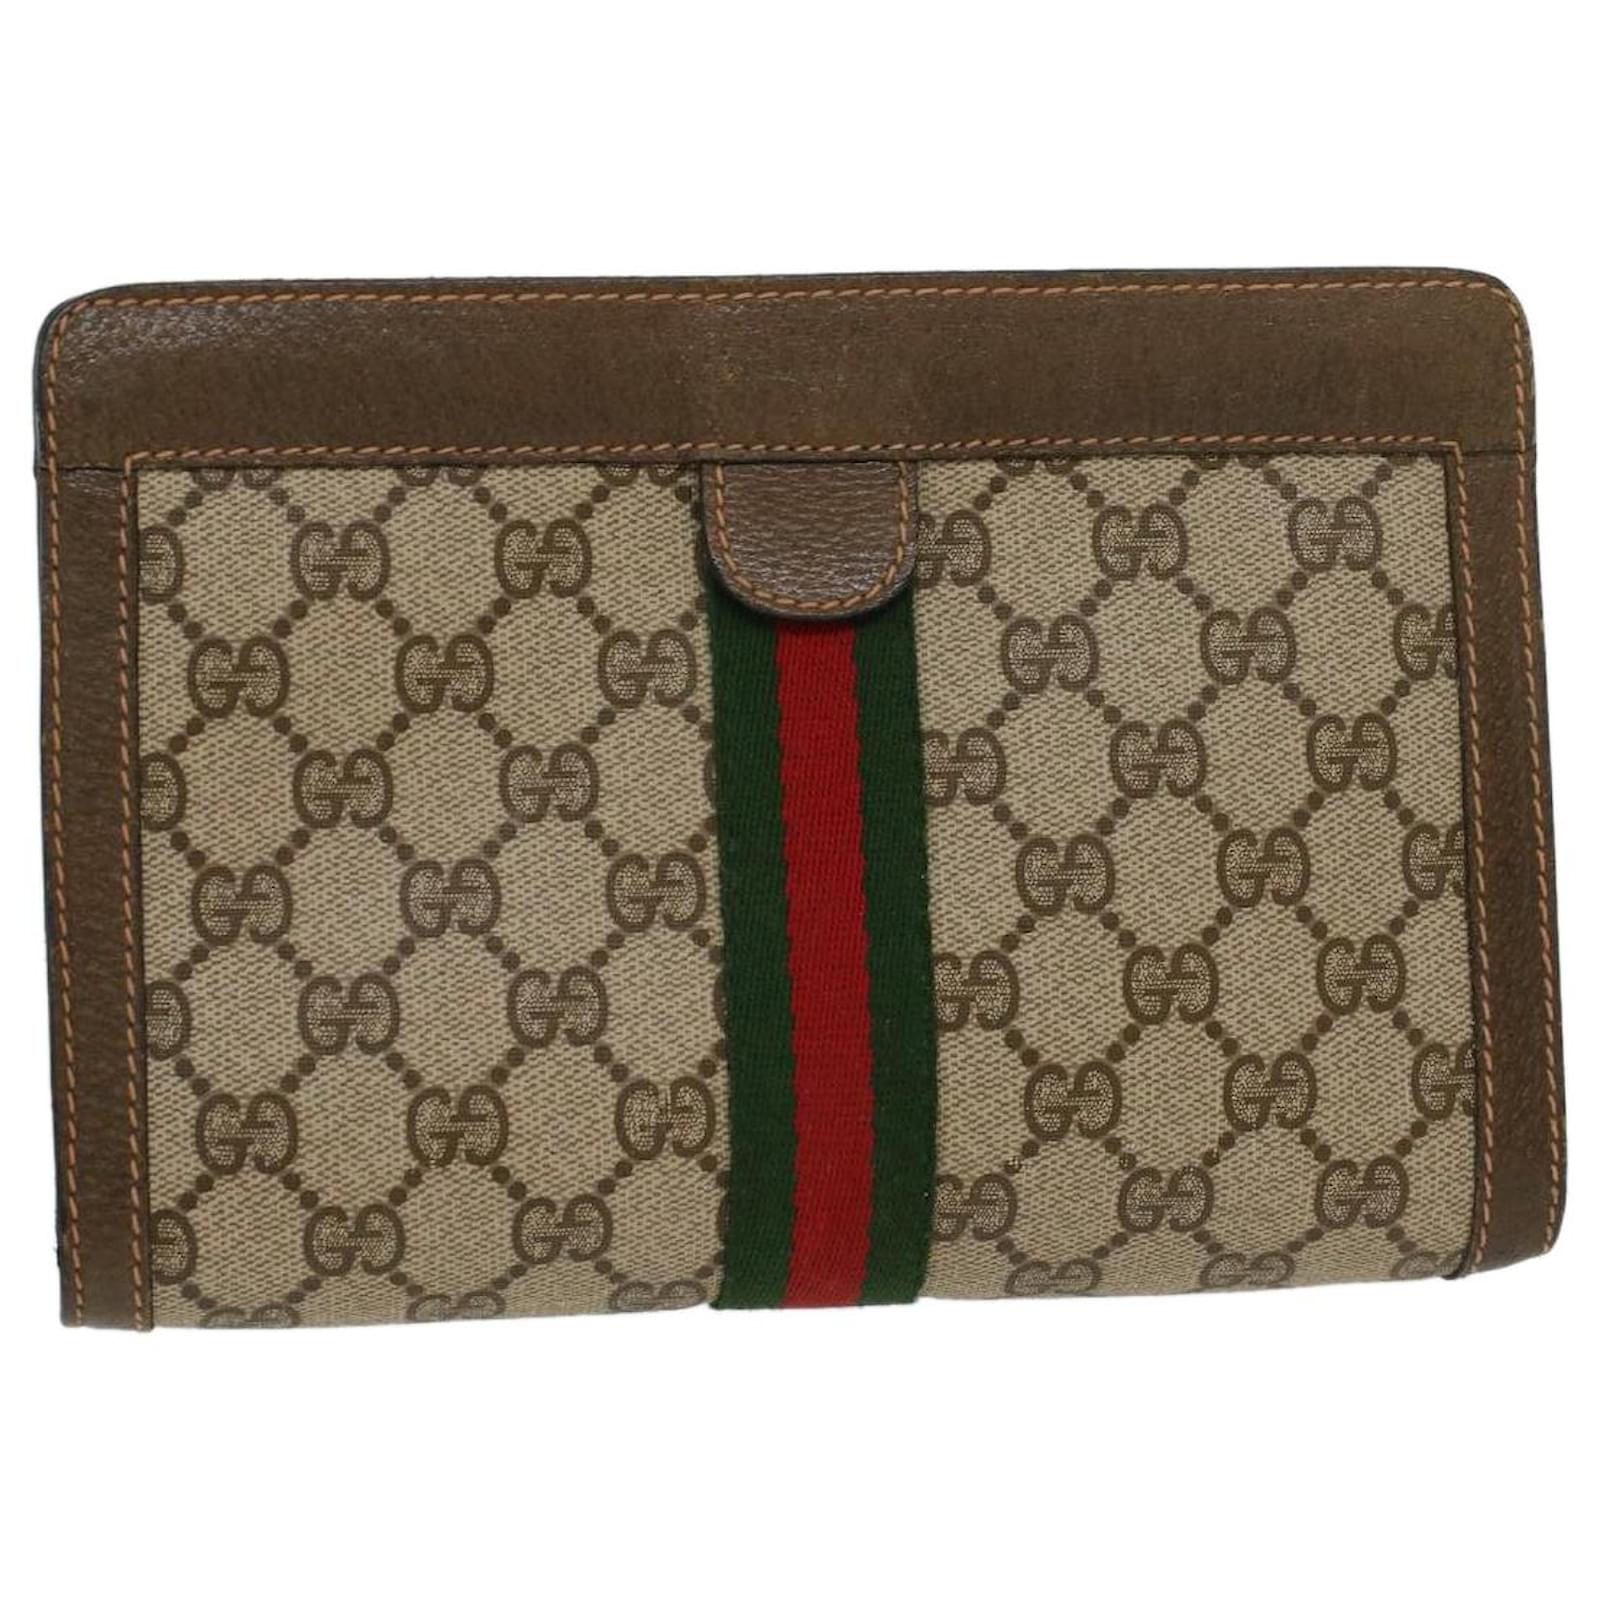 Gucci Beige/Dark Brown GG Supreme Canvas Web Bifold Wallet Gucci